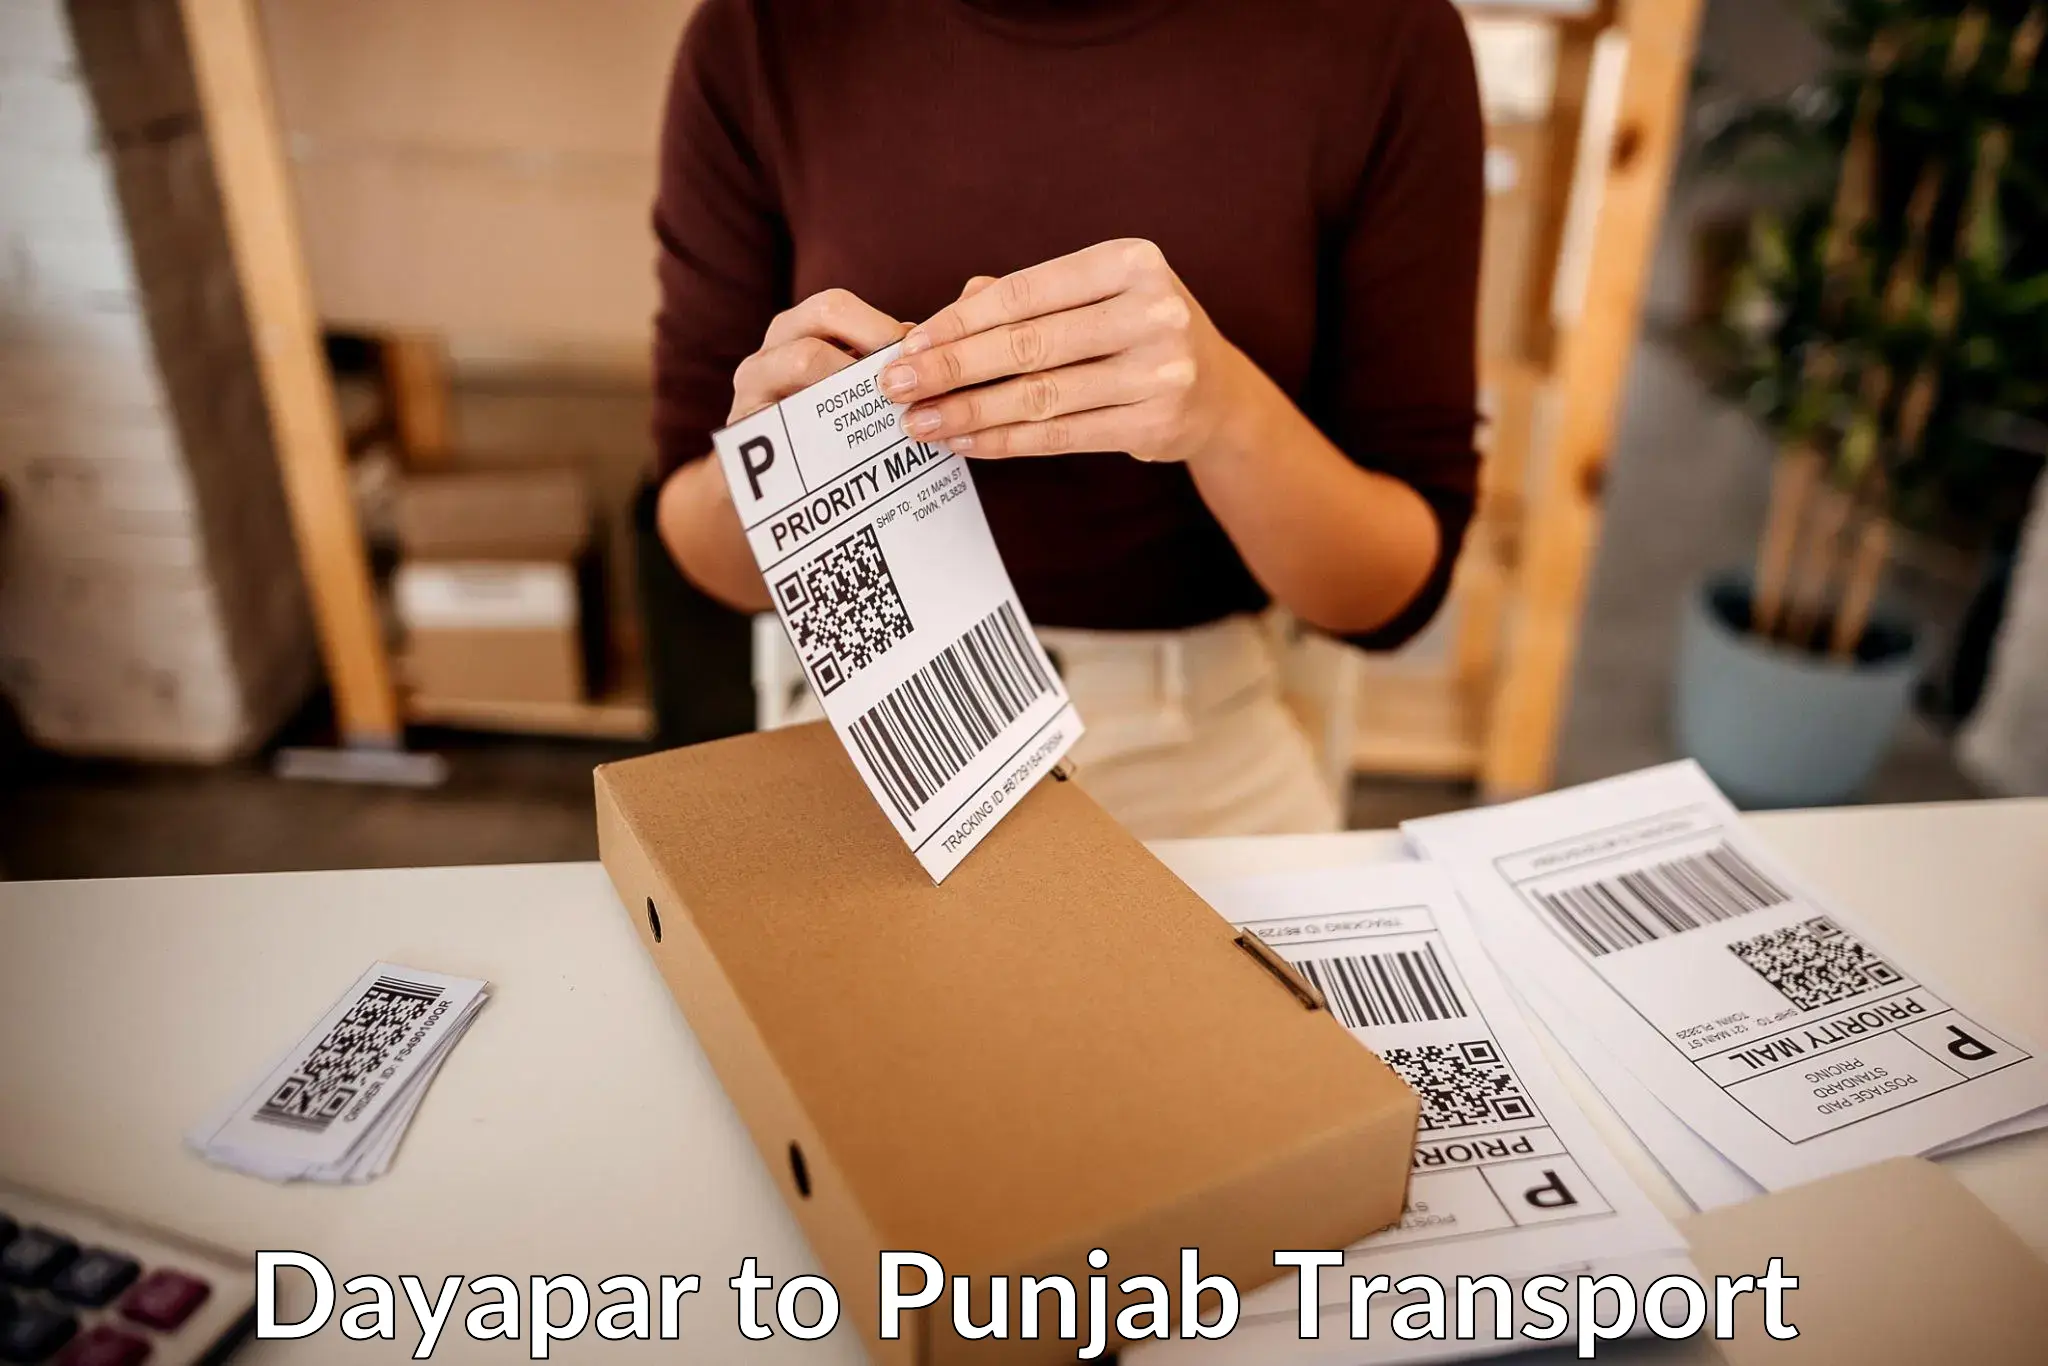 Bike transport service Dayapar to Punjab